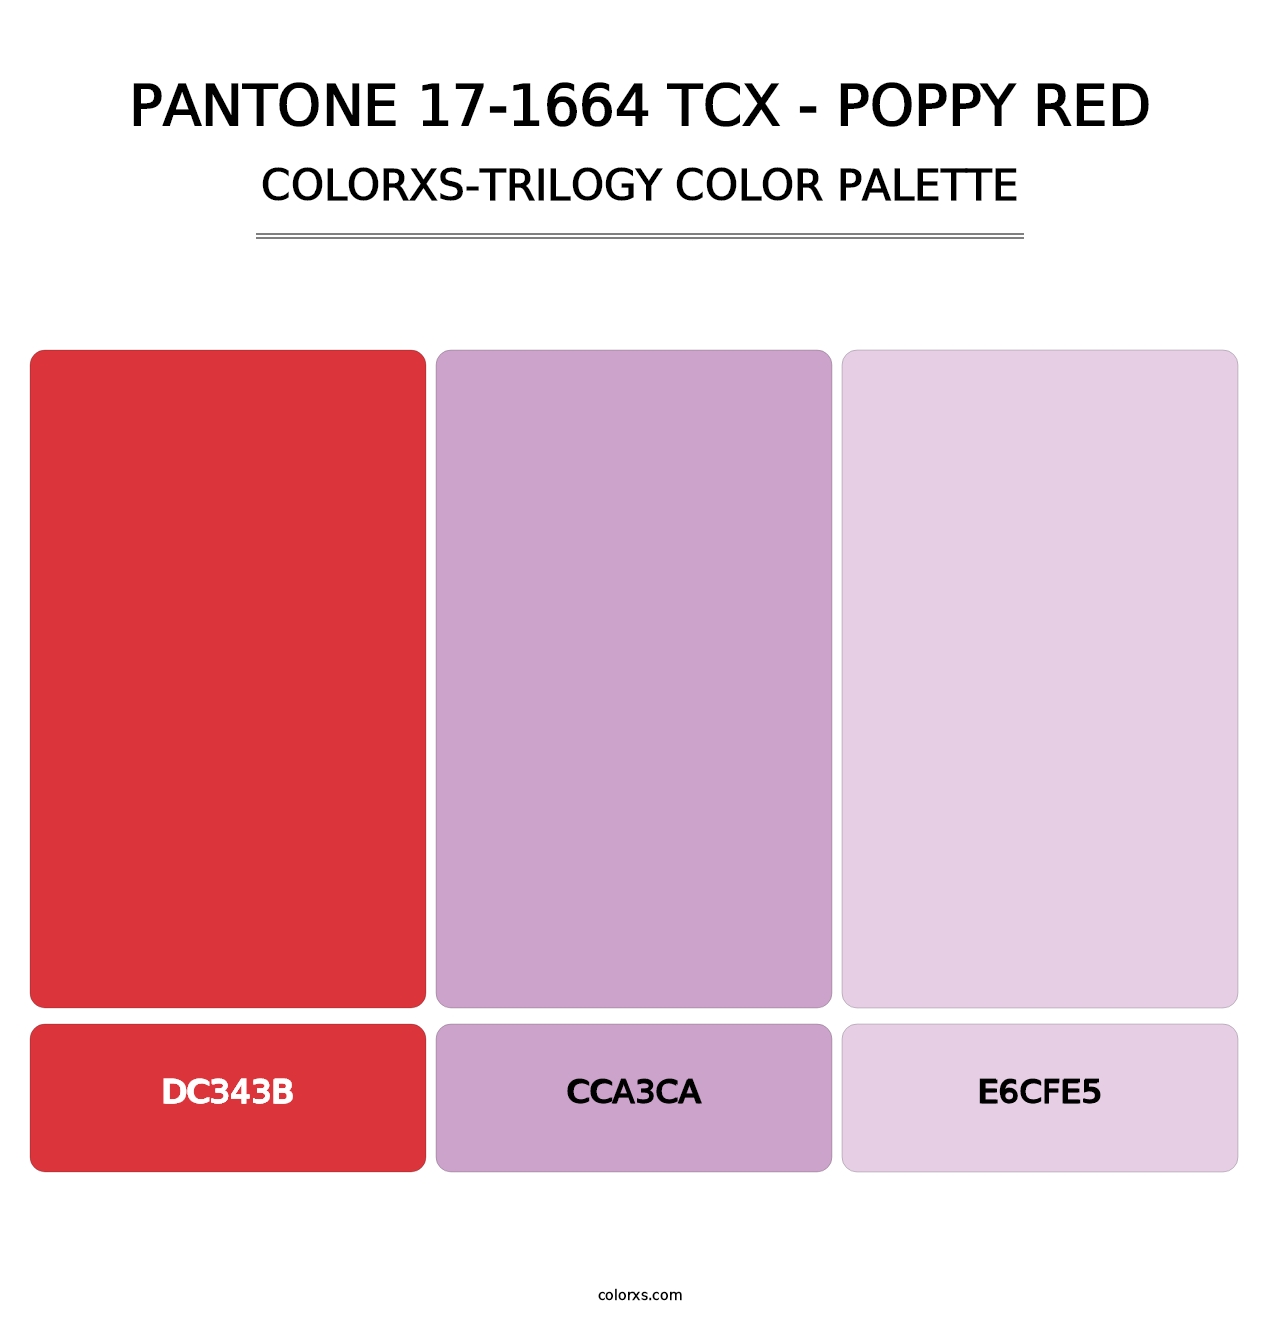 PANTONE 17-1664 TCX - Poppy Red - Colorxs Trilogy Palette